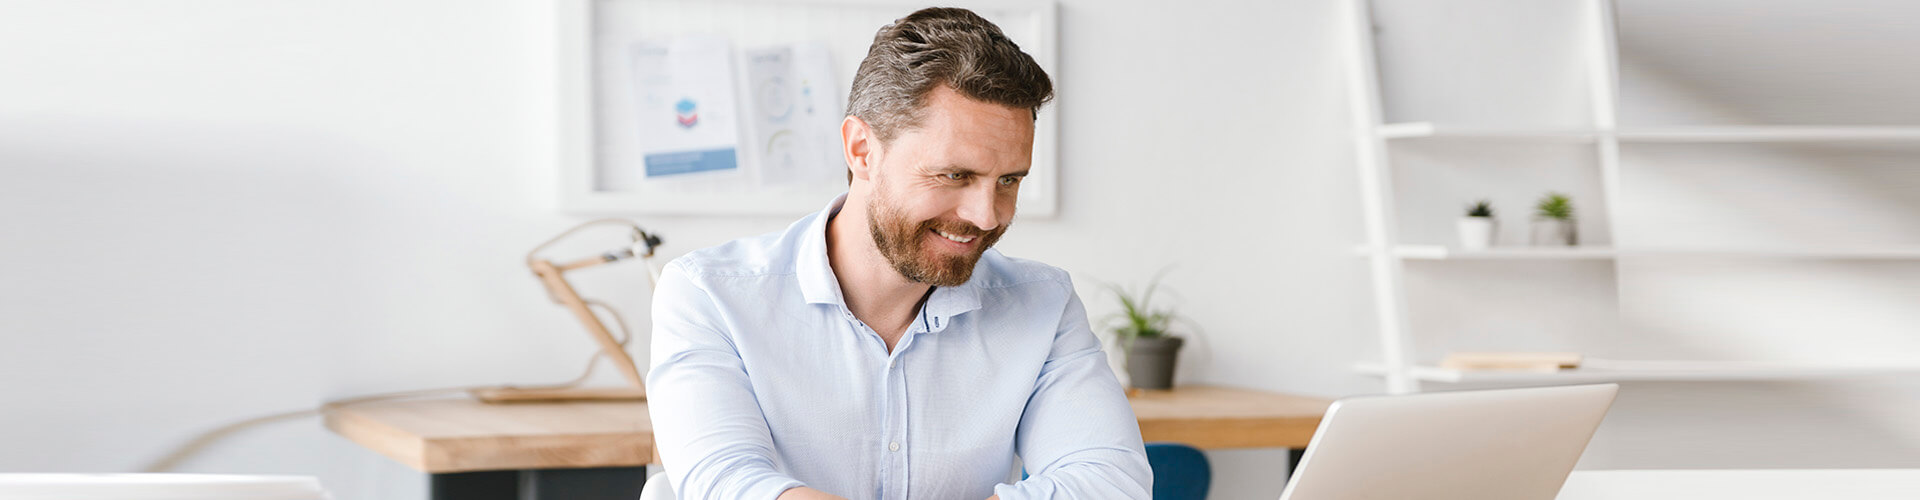 Servicios para tu gestión diaria Empresas - Hombre de negocios con camisa y sonriendo mientras se encuentra trabajando con su portatil en la oficina